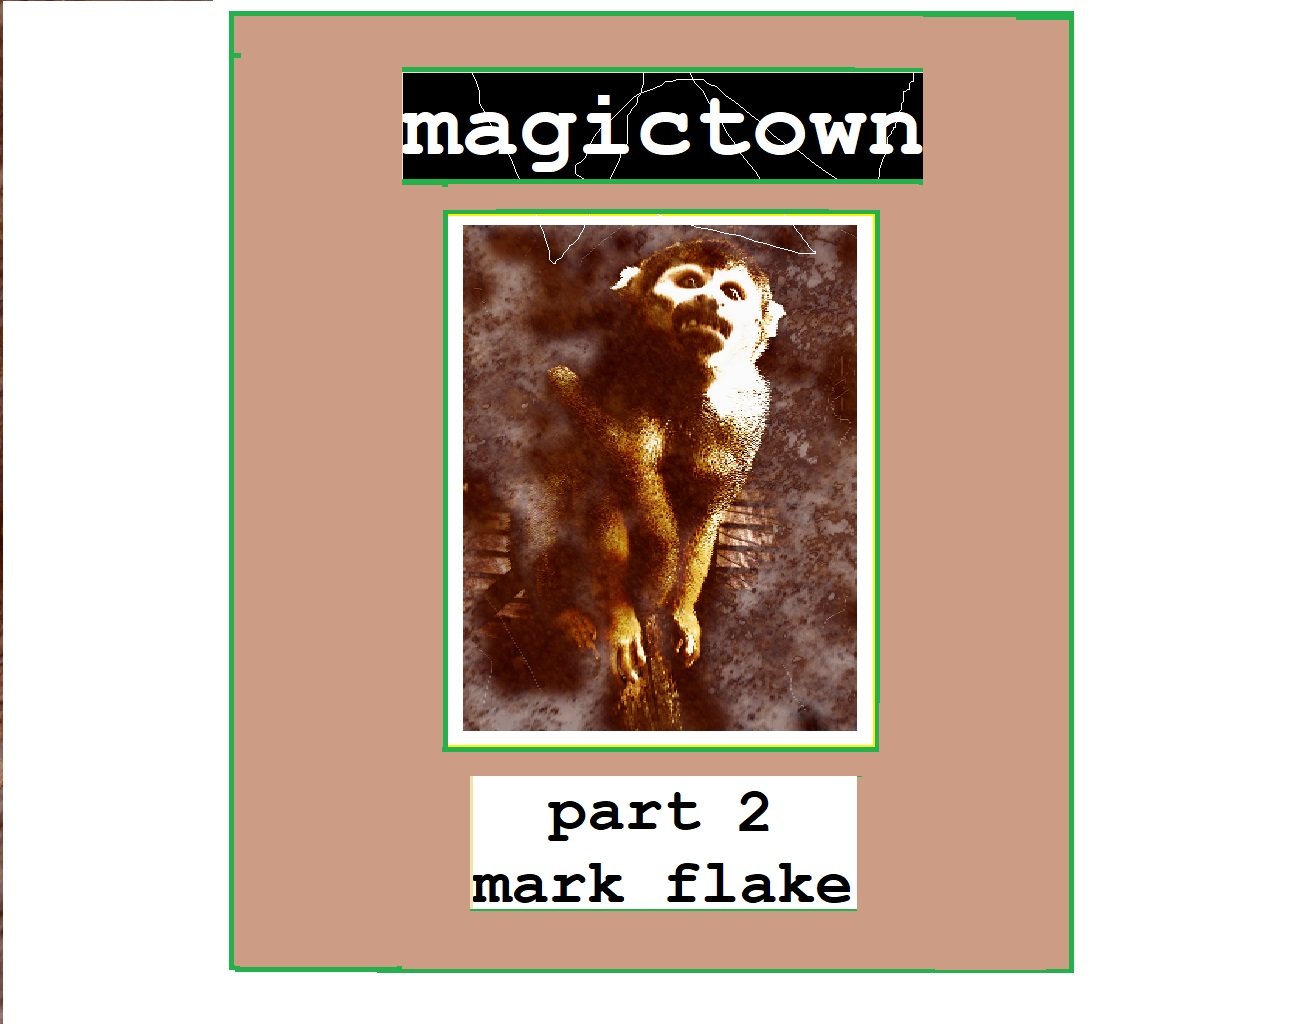 magictown pt. 2